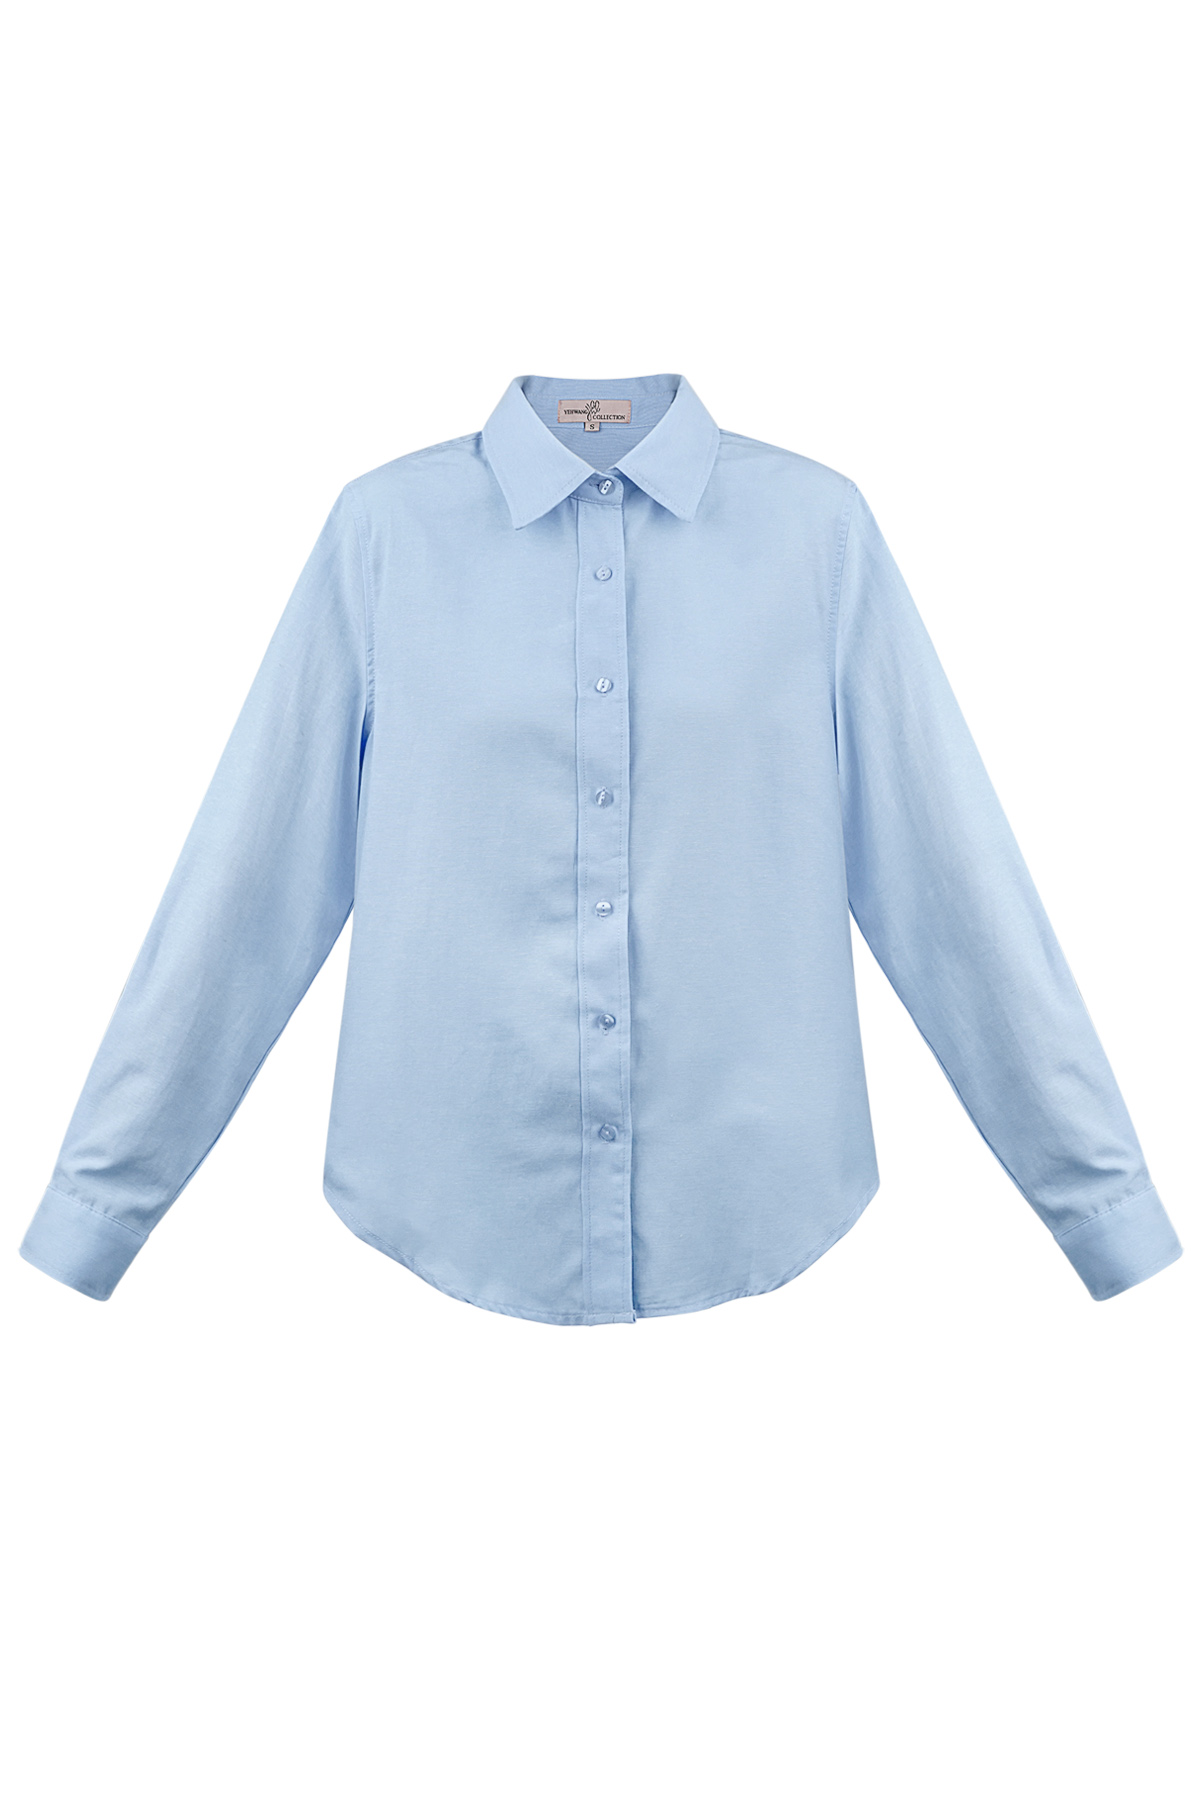 Einfache schlichte Bluse – blau